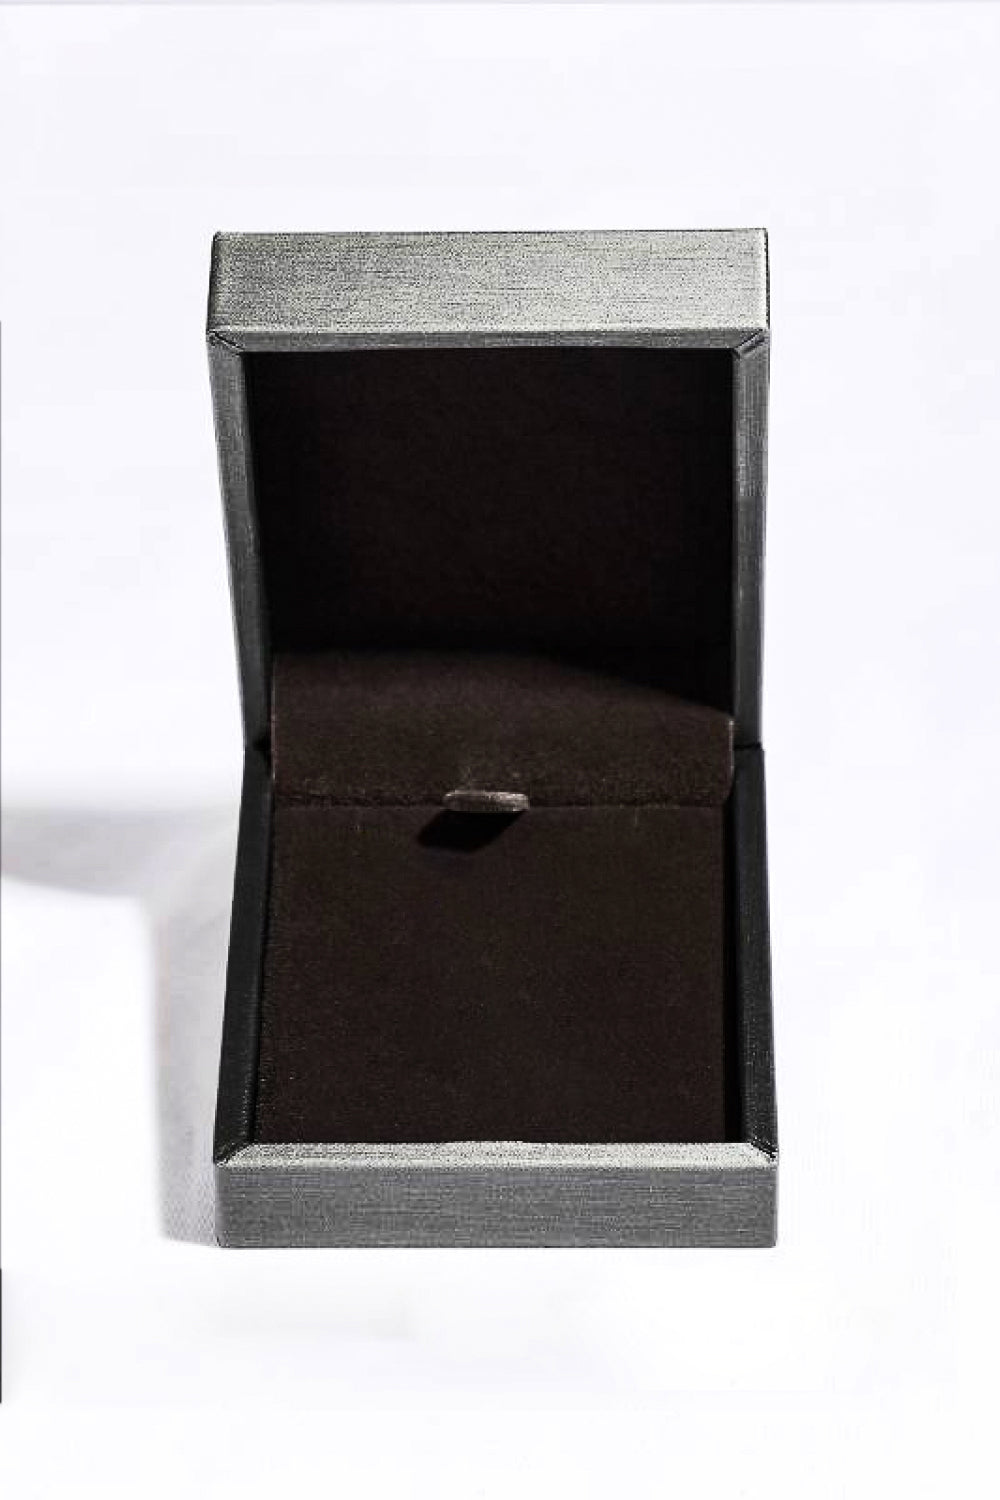 Sterling Silver V Letter Pendant Necklace - DromedarShop.com Online Boutique